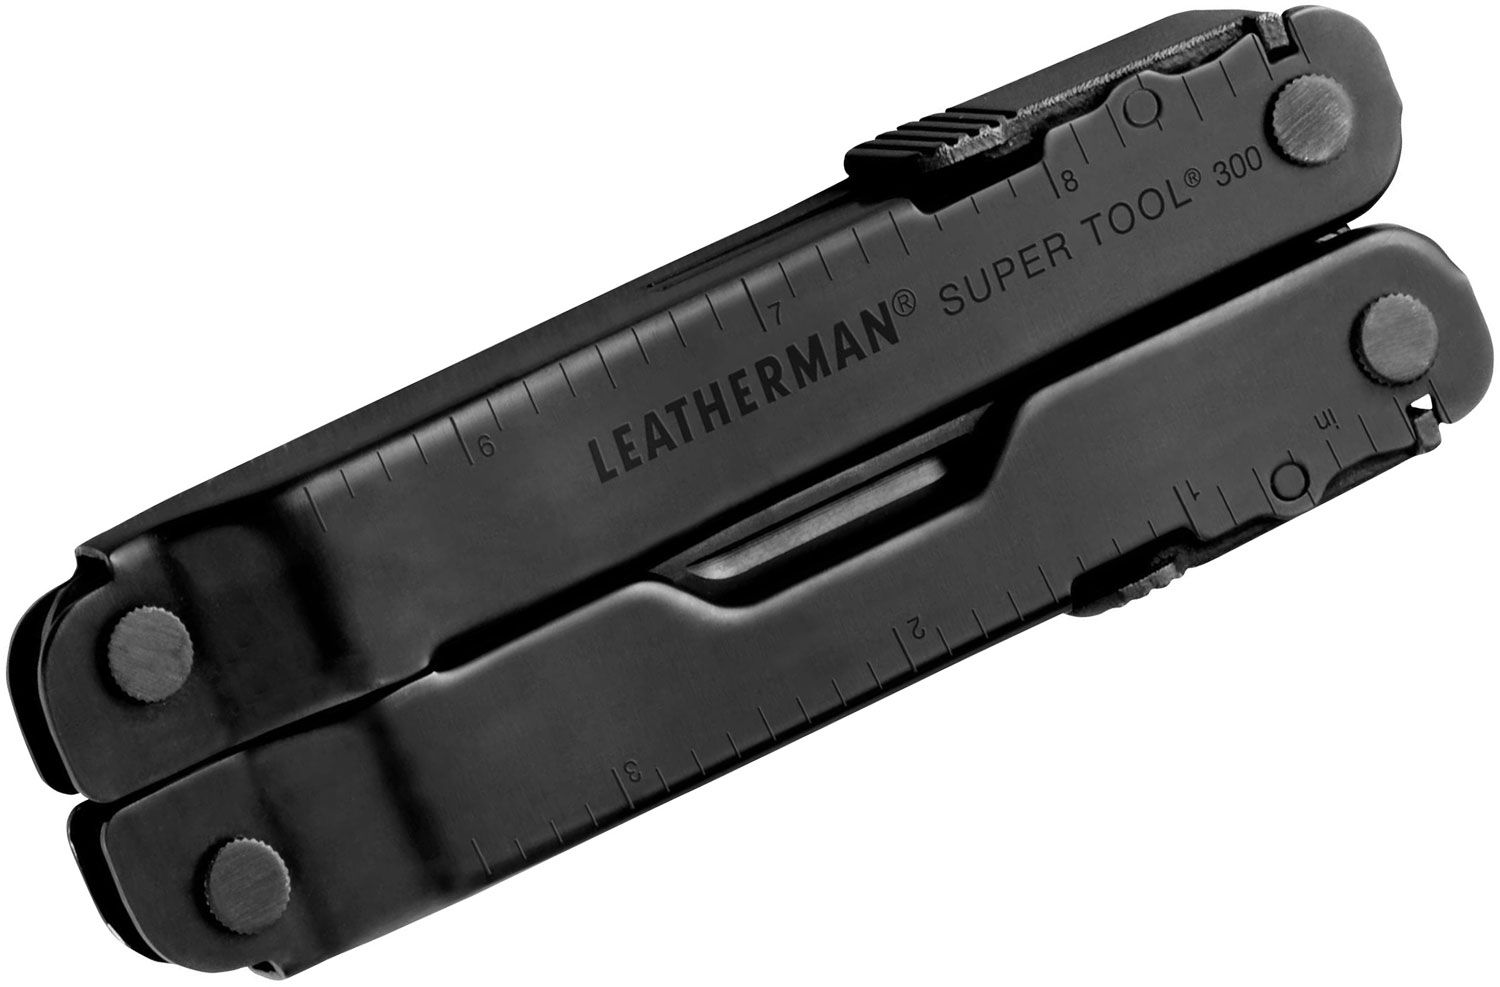 Leatherman Super Tool 300 Heavy-Duty Multi-Tool, Black Oxide